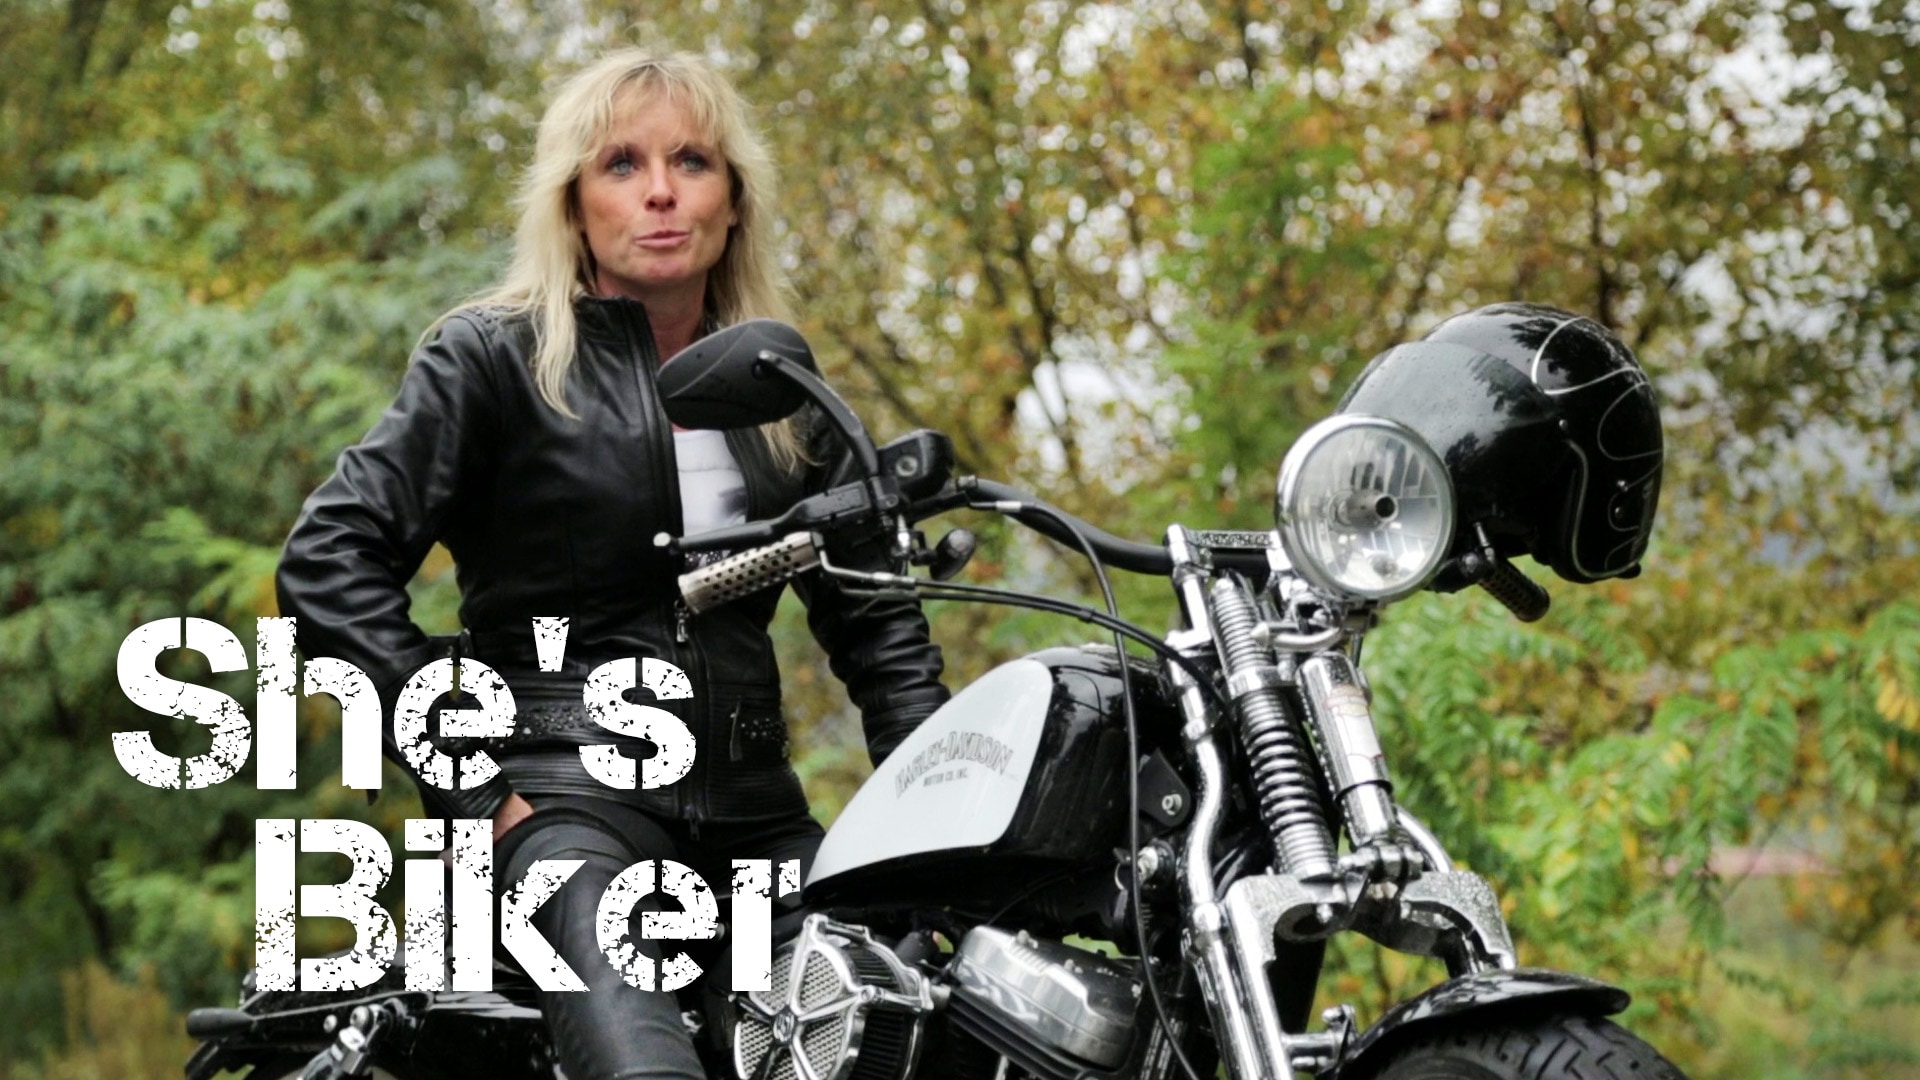 She's biker : la moto est une femme